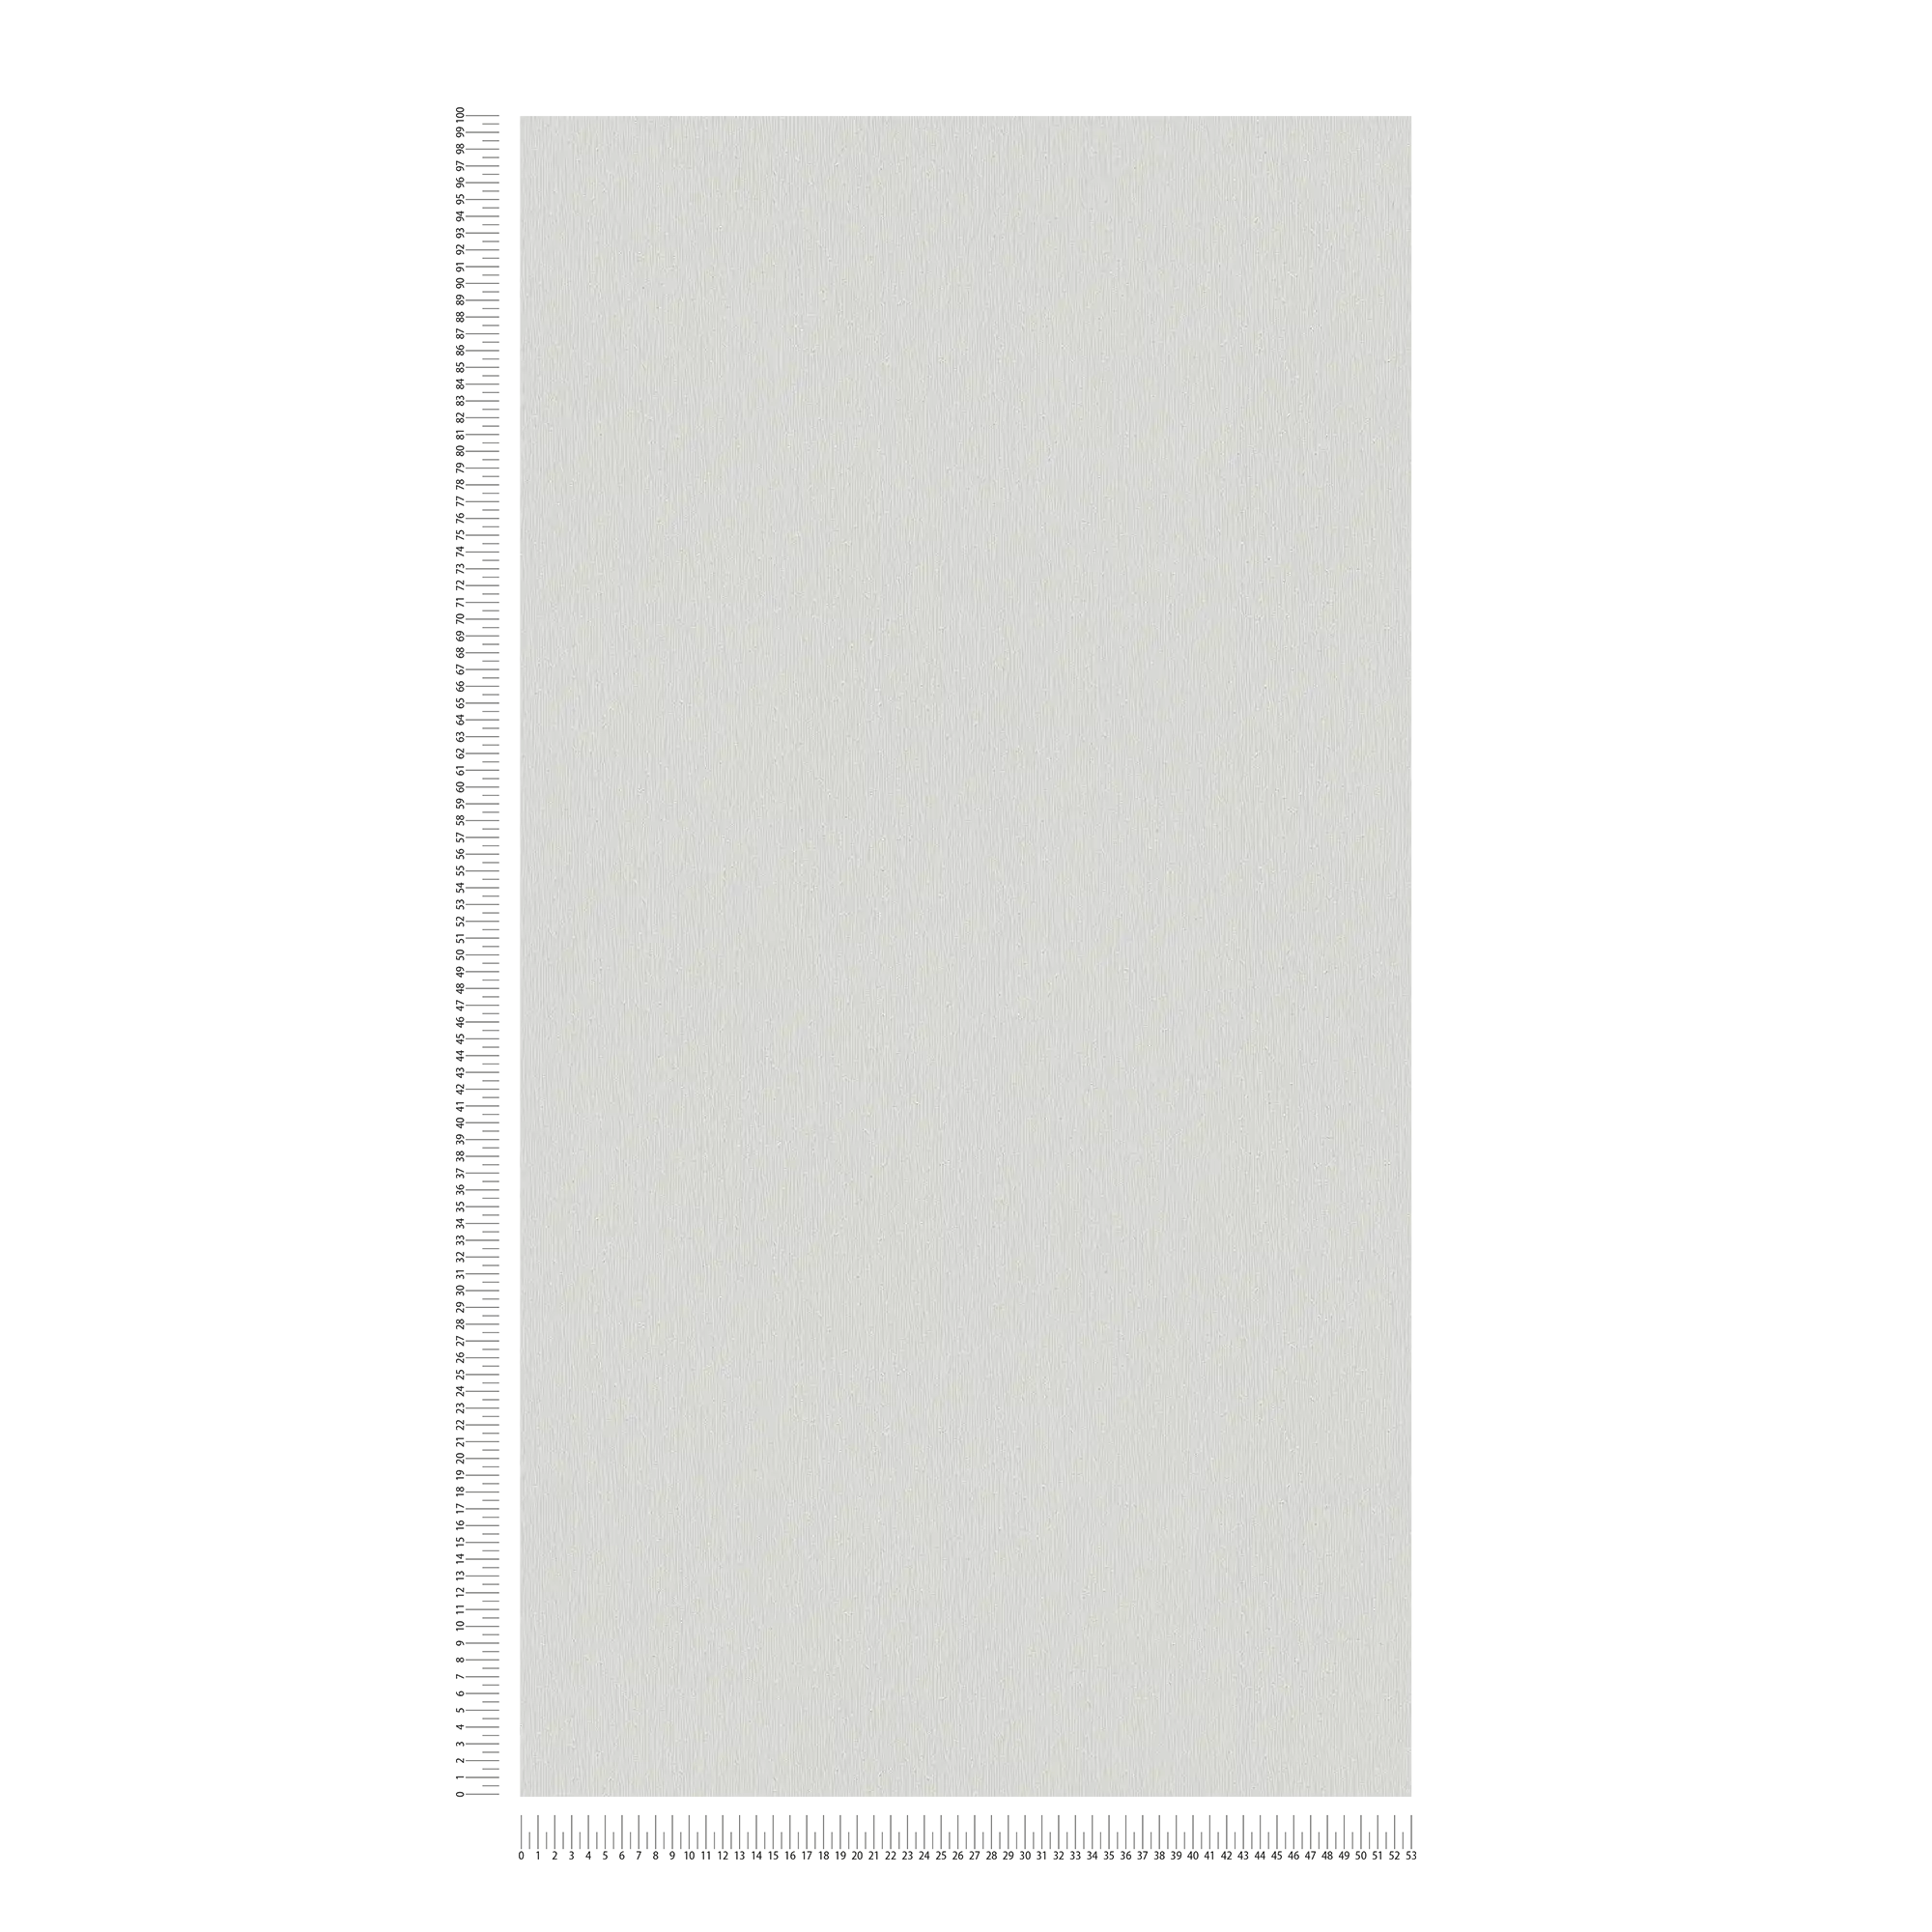             Carta da parati in tessuto non tessuto grigio chiaro con struttura monocromatica - Grigio
        